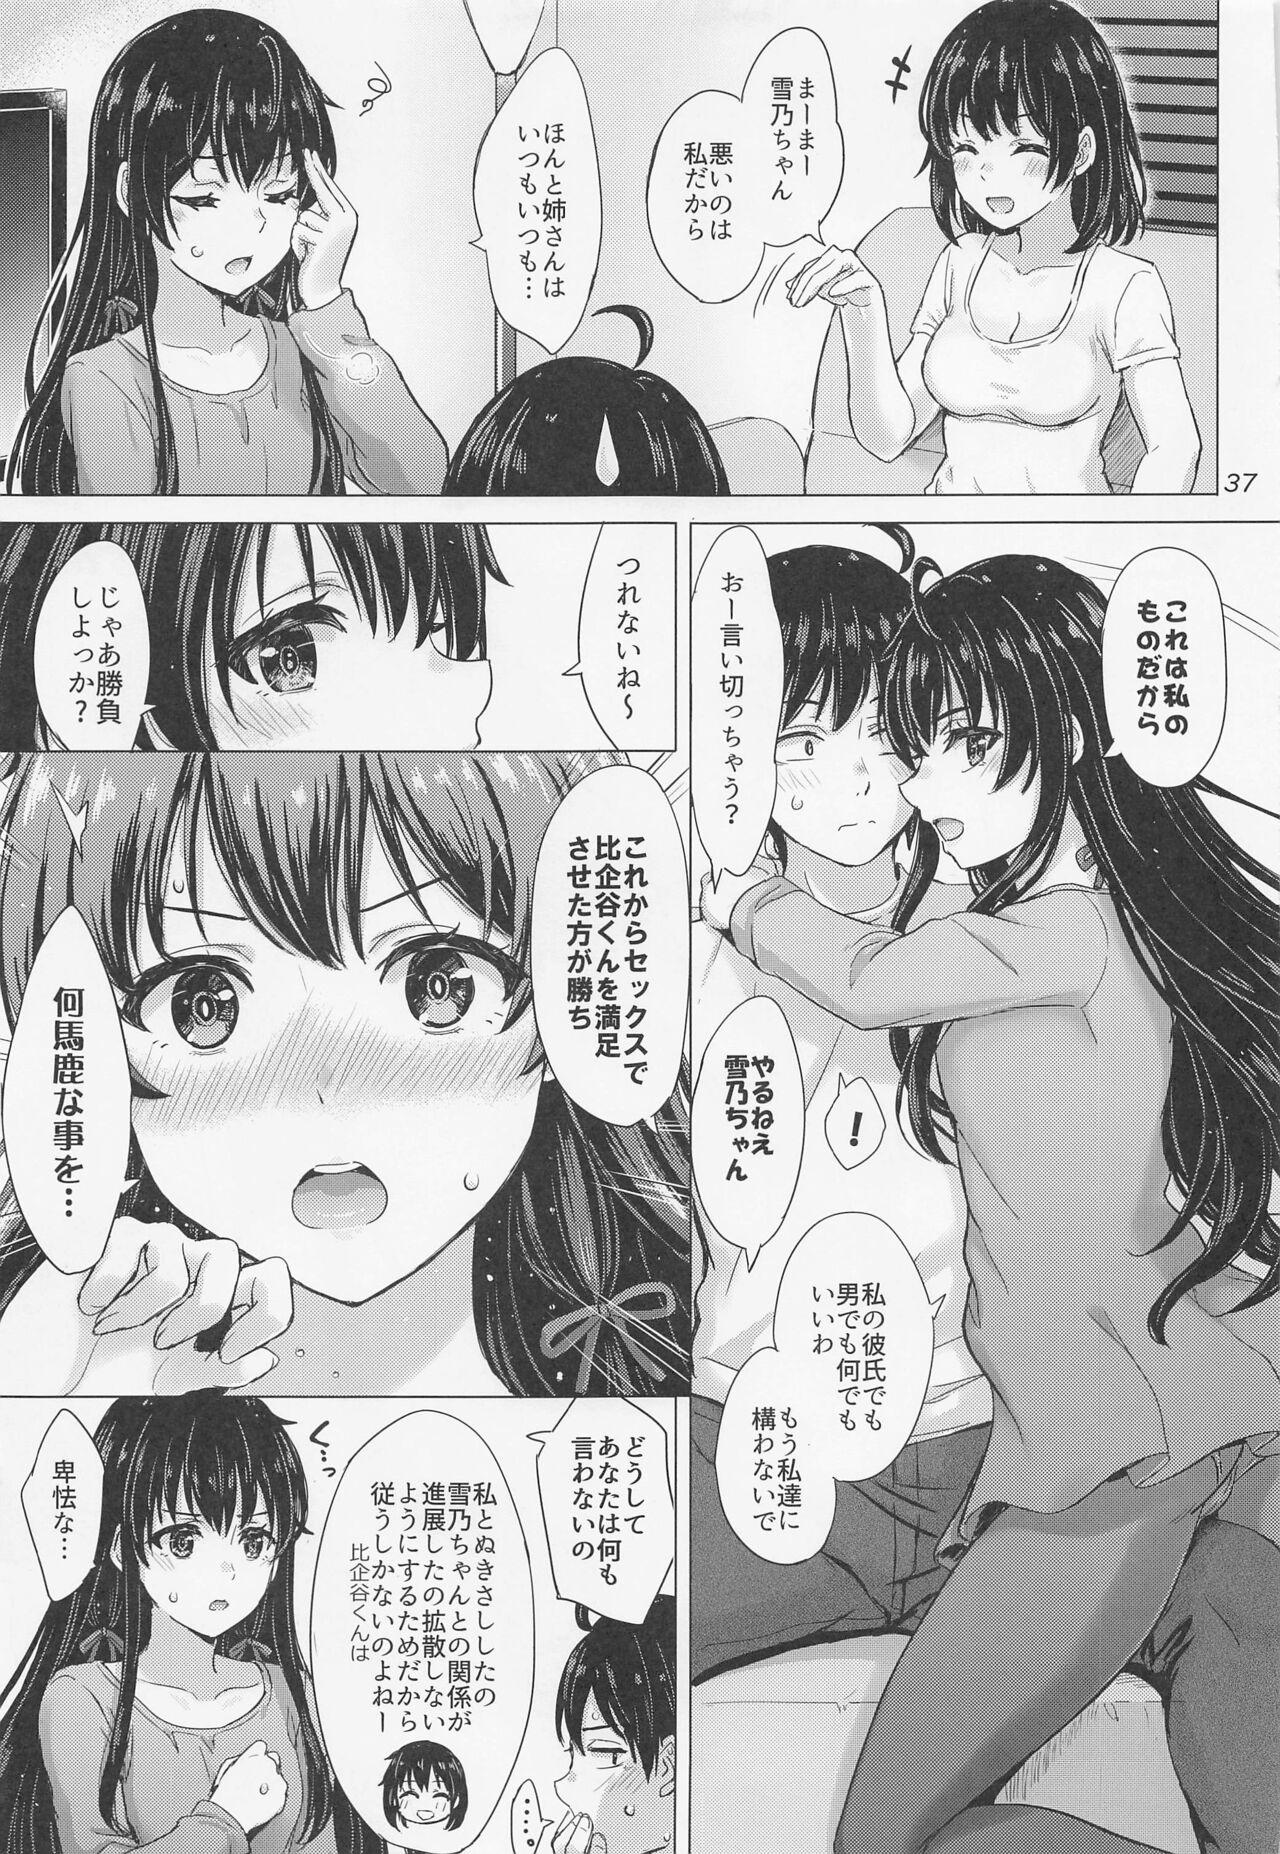 Yukinoshita Shimai to Iyarashii Futari no Himegoto. - The Yukinoshita sisters each have sex with hachiman. 35